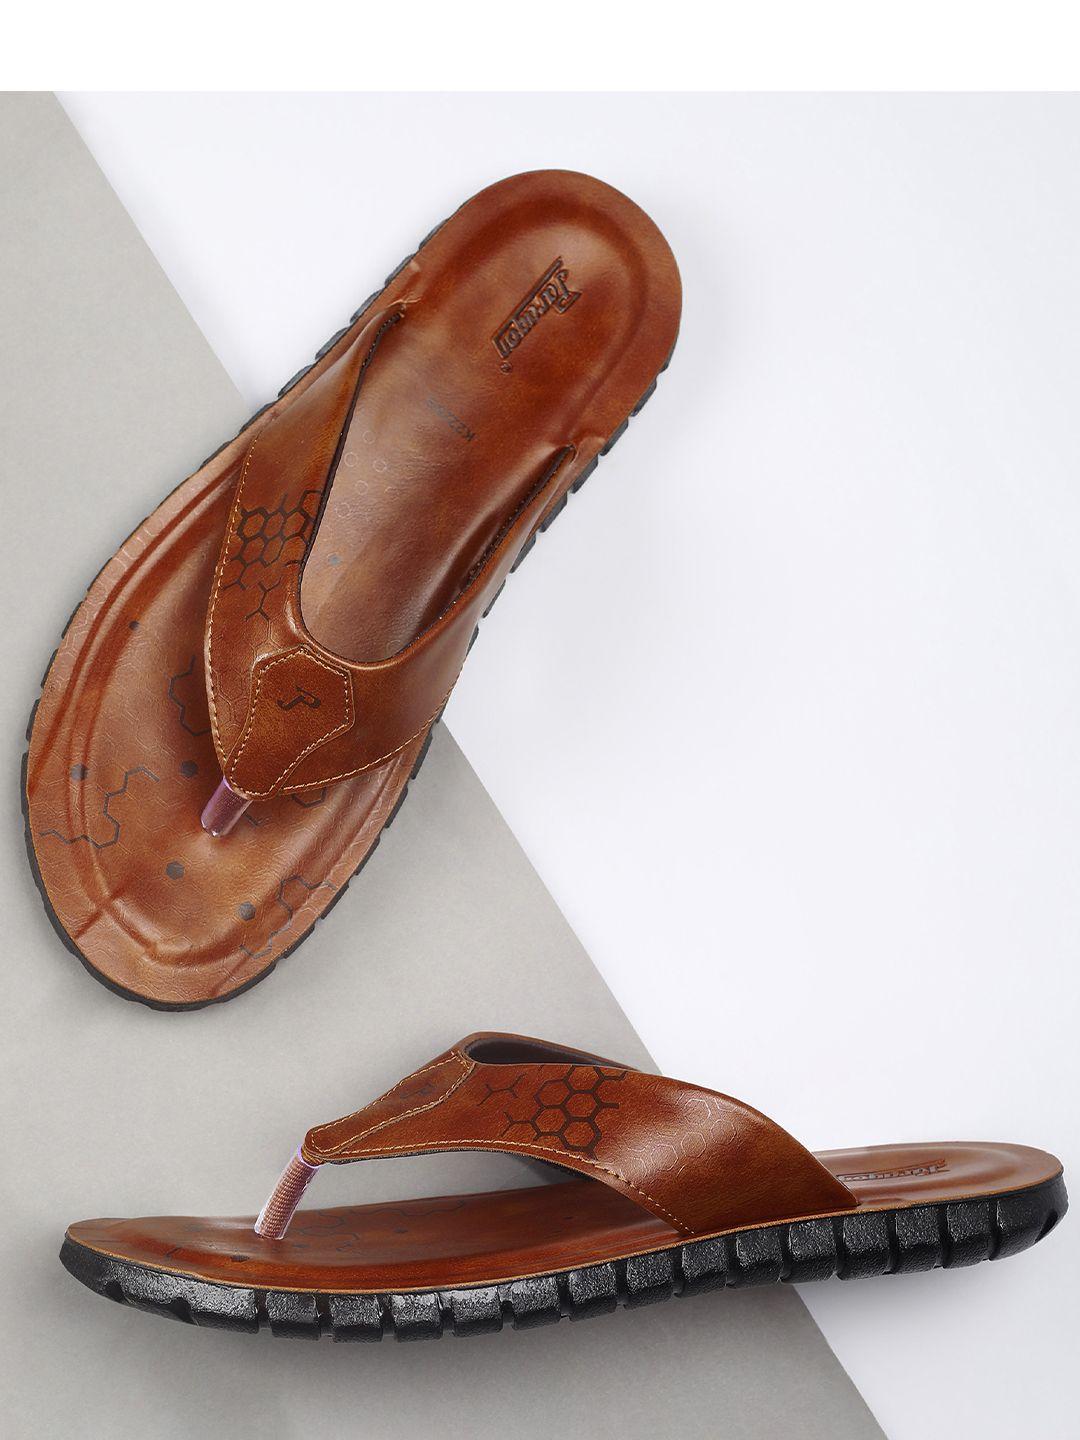 paragon-men-printed-anti-skid-comfort-sandals